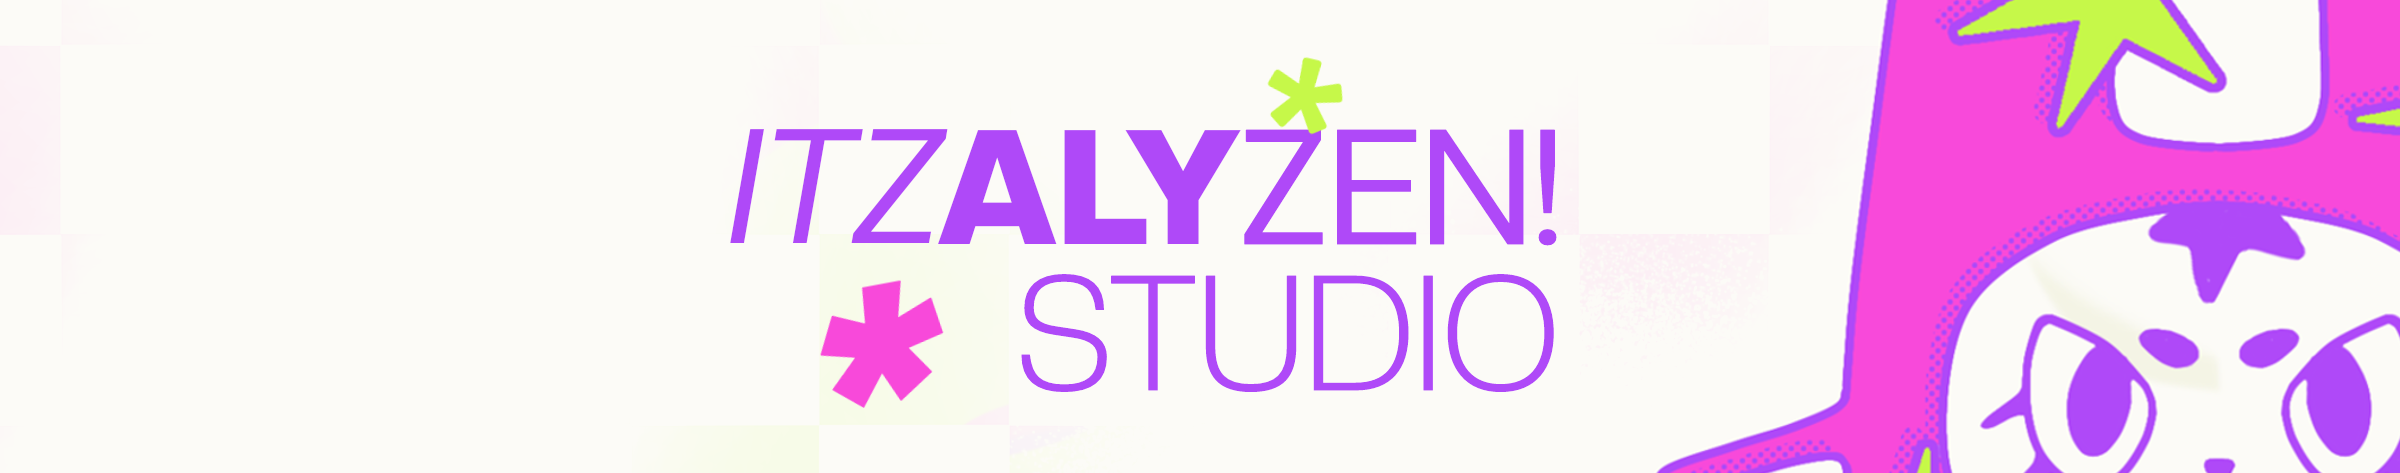 Banner de perfil de alyzen :D